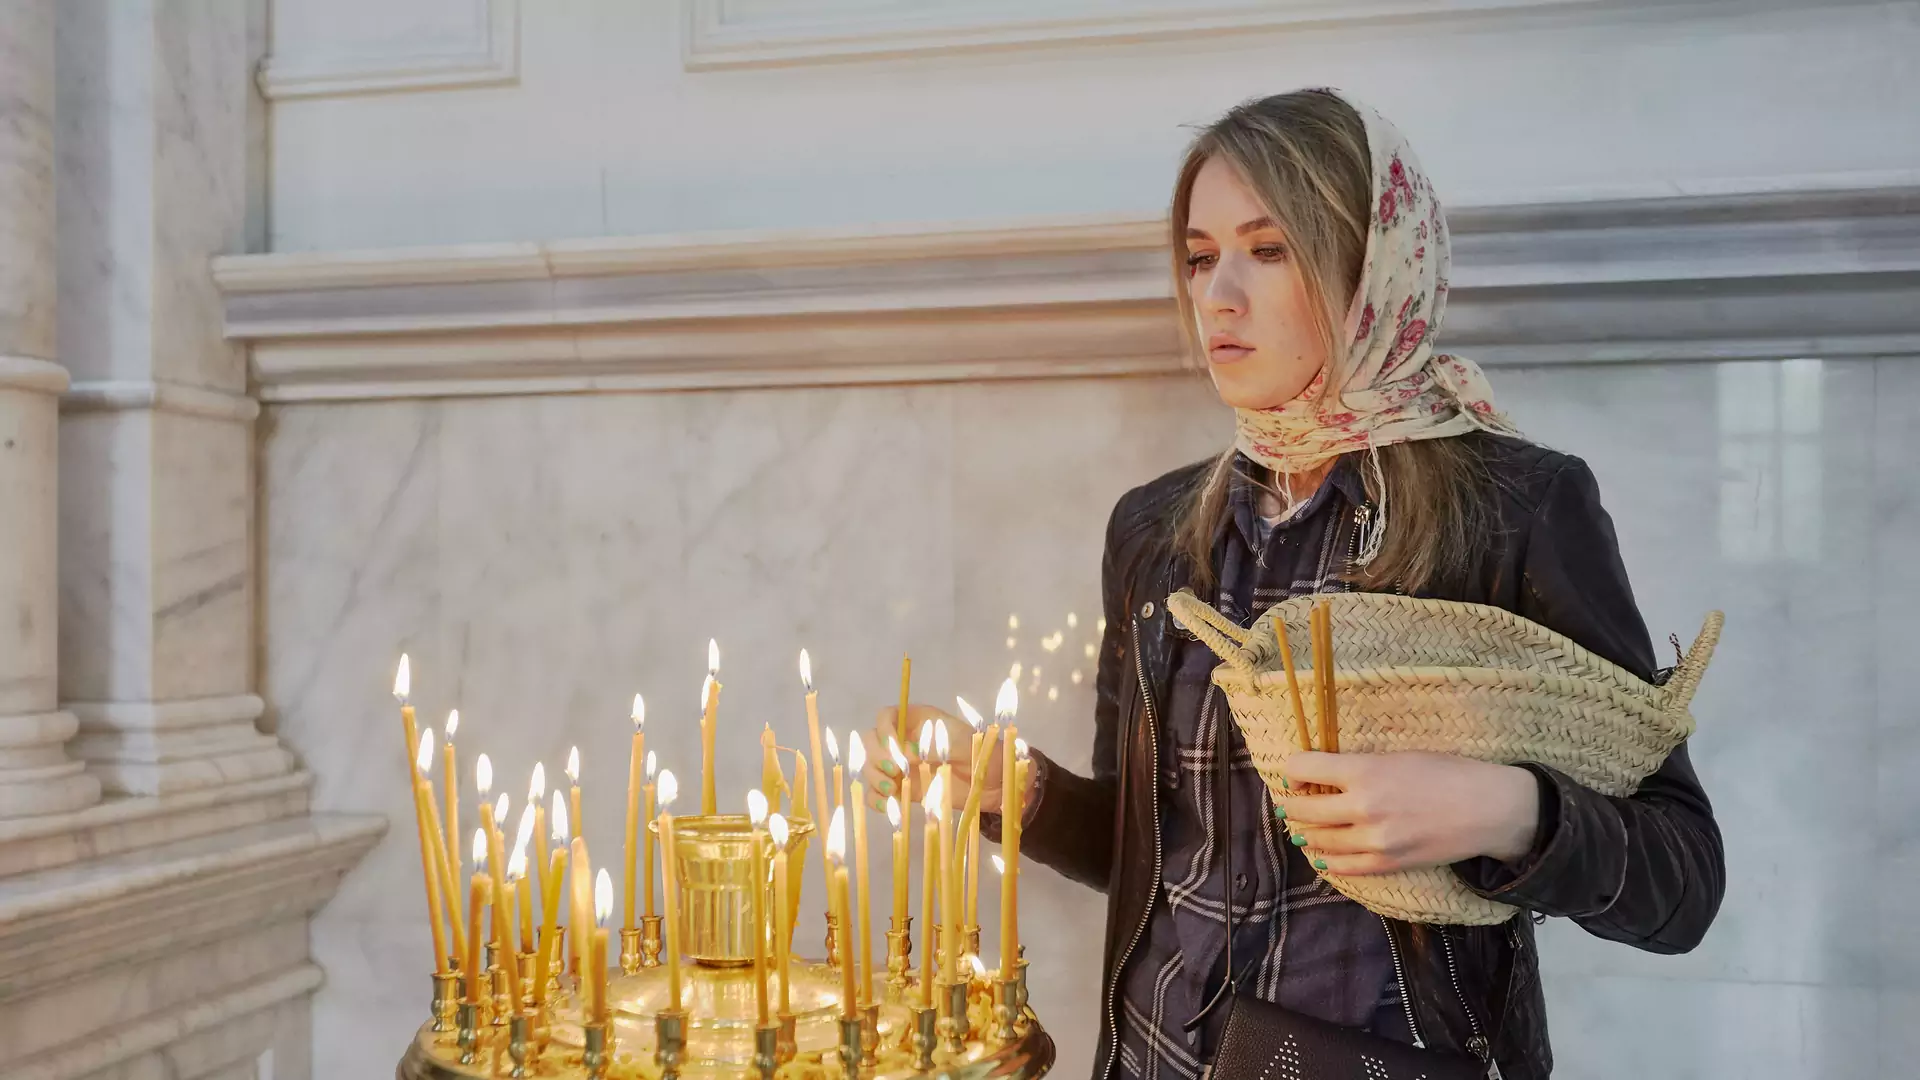 Wielkanoc prawosławna: fakty i ciekawostki, które warto znać